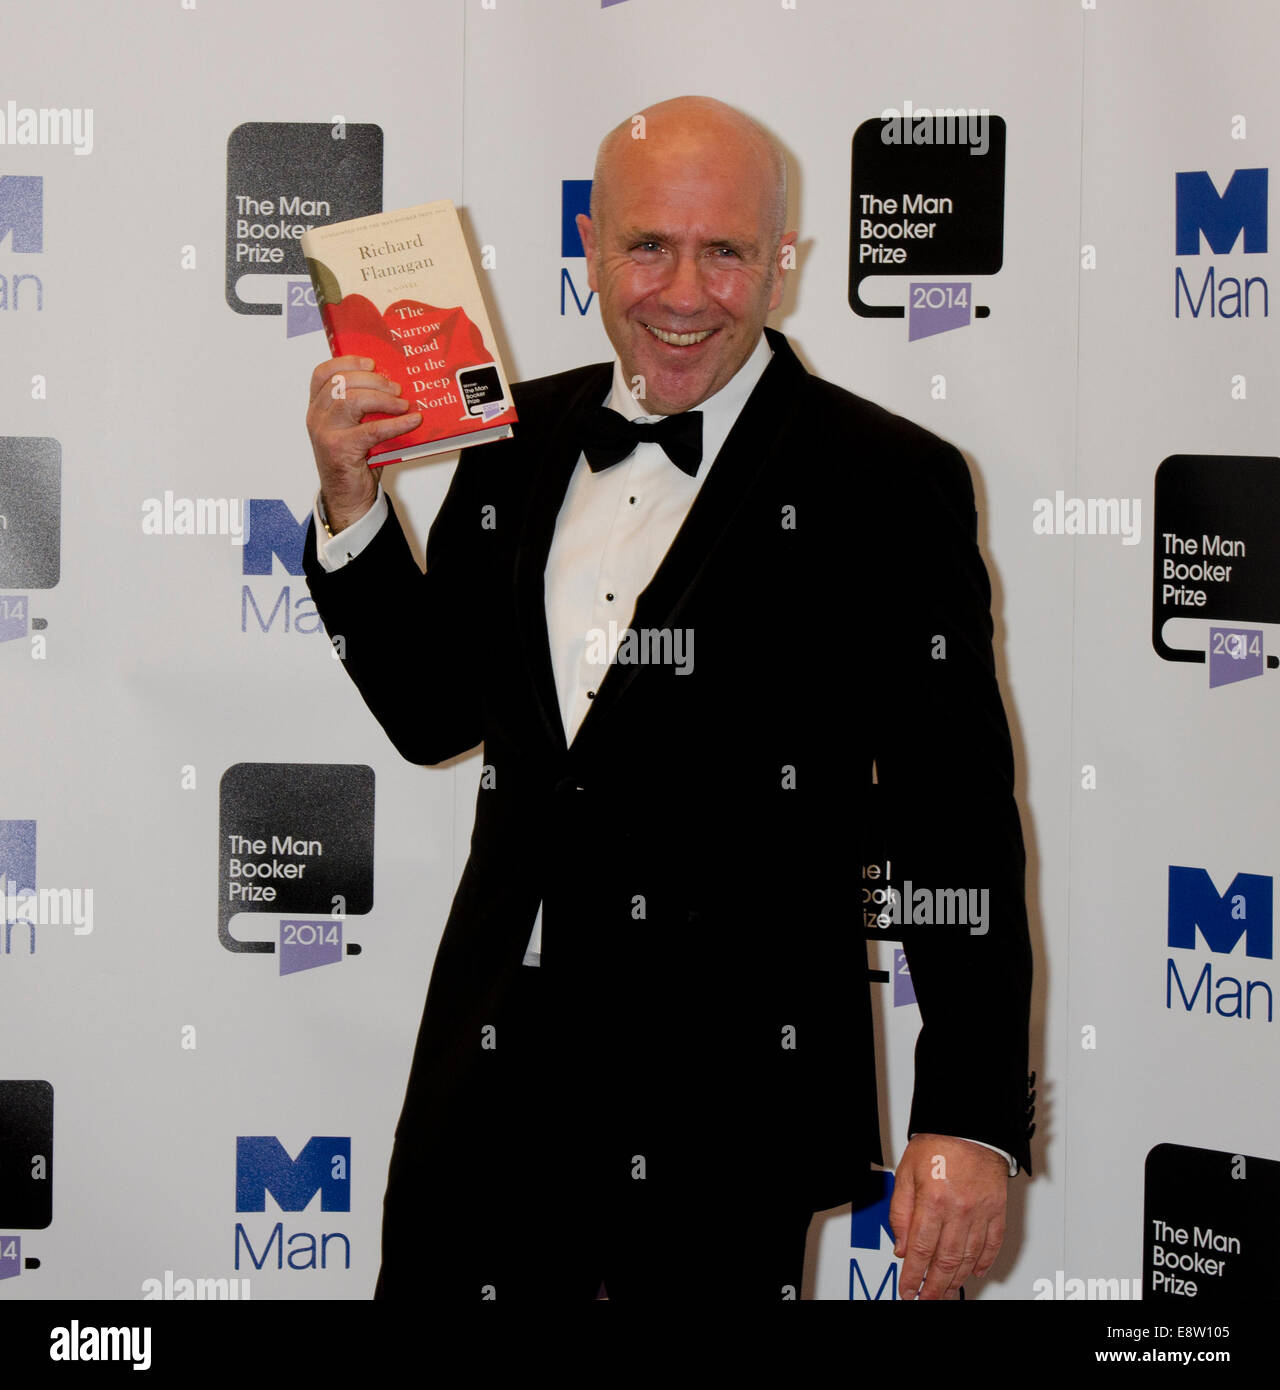 Booker Prize for Fiction für Fiktion 2014 Gewinner Richard Flanagan für die schmale Straße in den tiefen Norden. London, UK 14. Oktober 2014. Bildnachweis: Prixnews/Alamy Live-Nachrichten Stockfoto